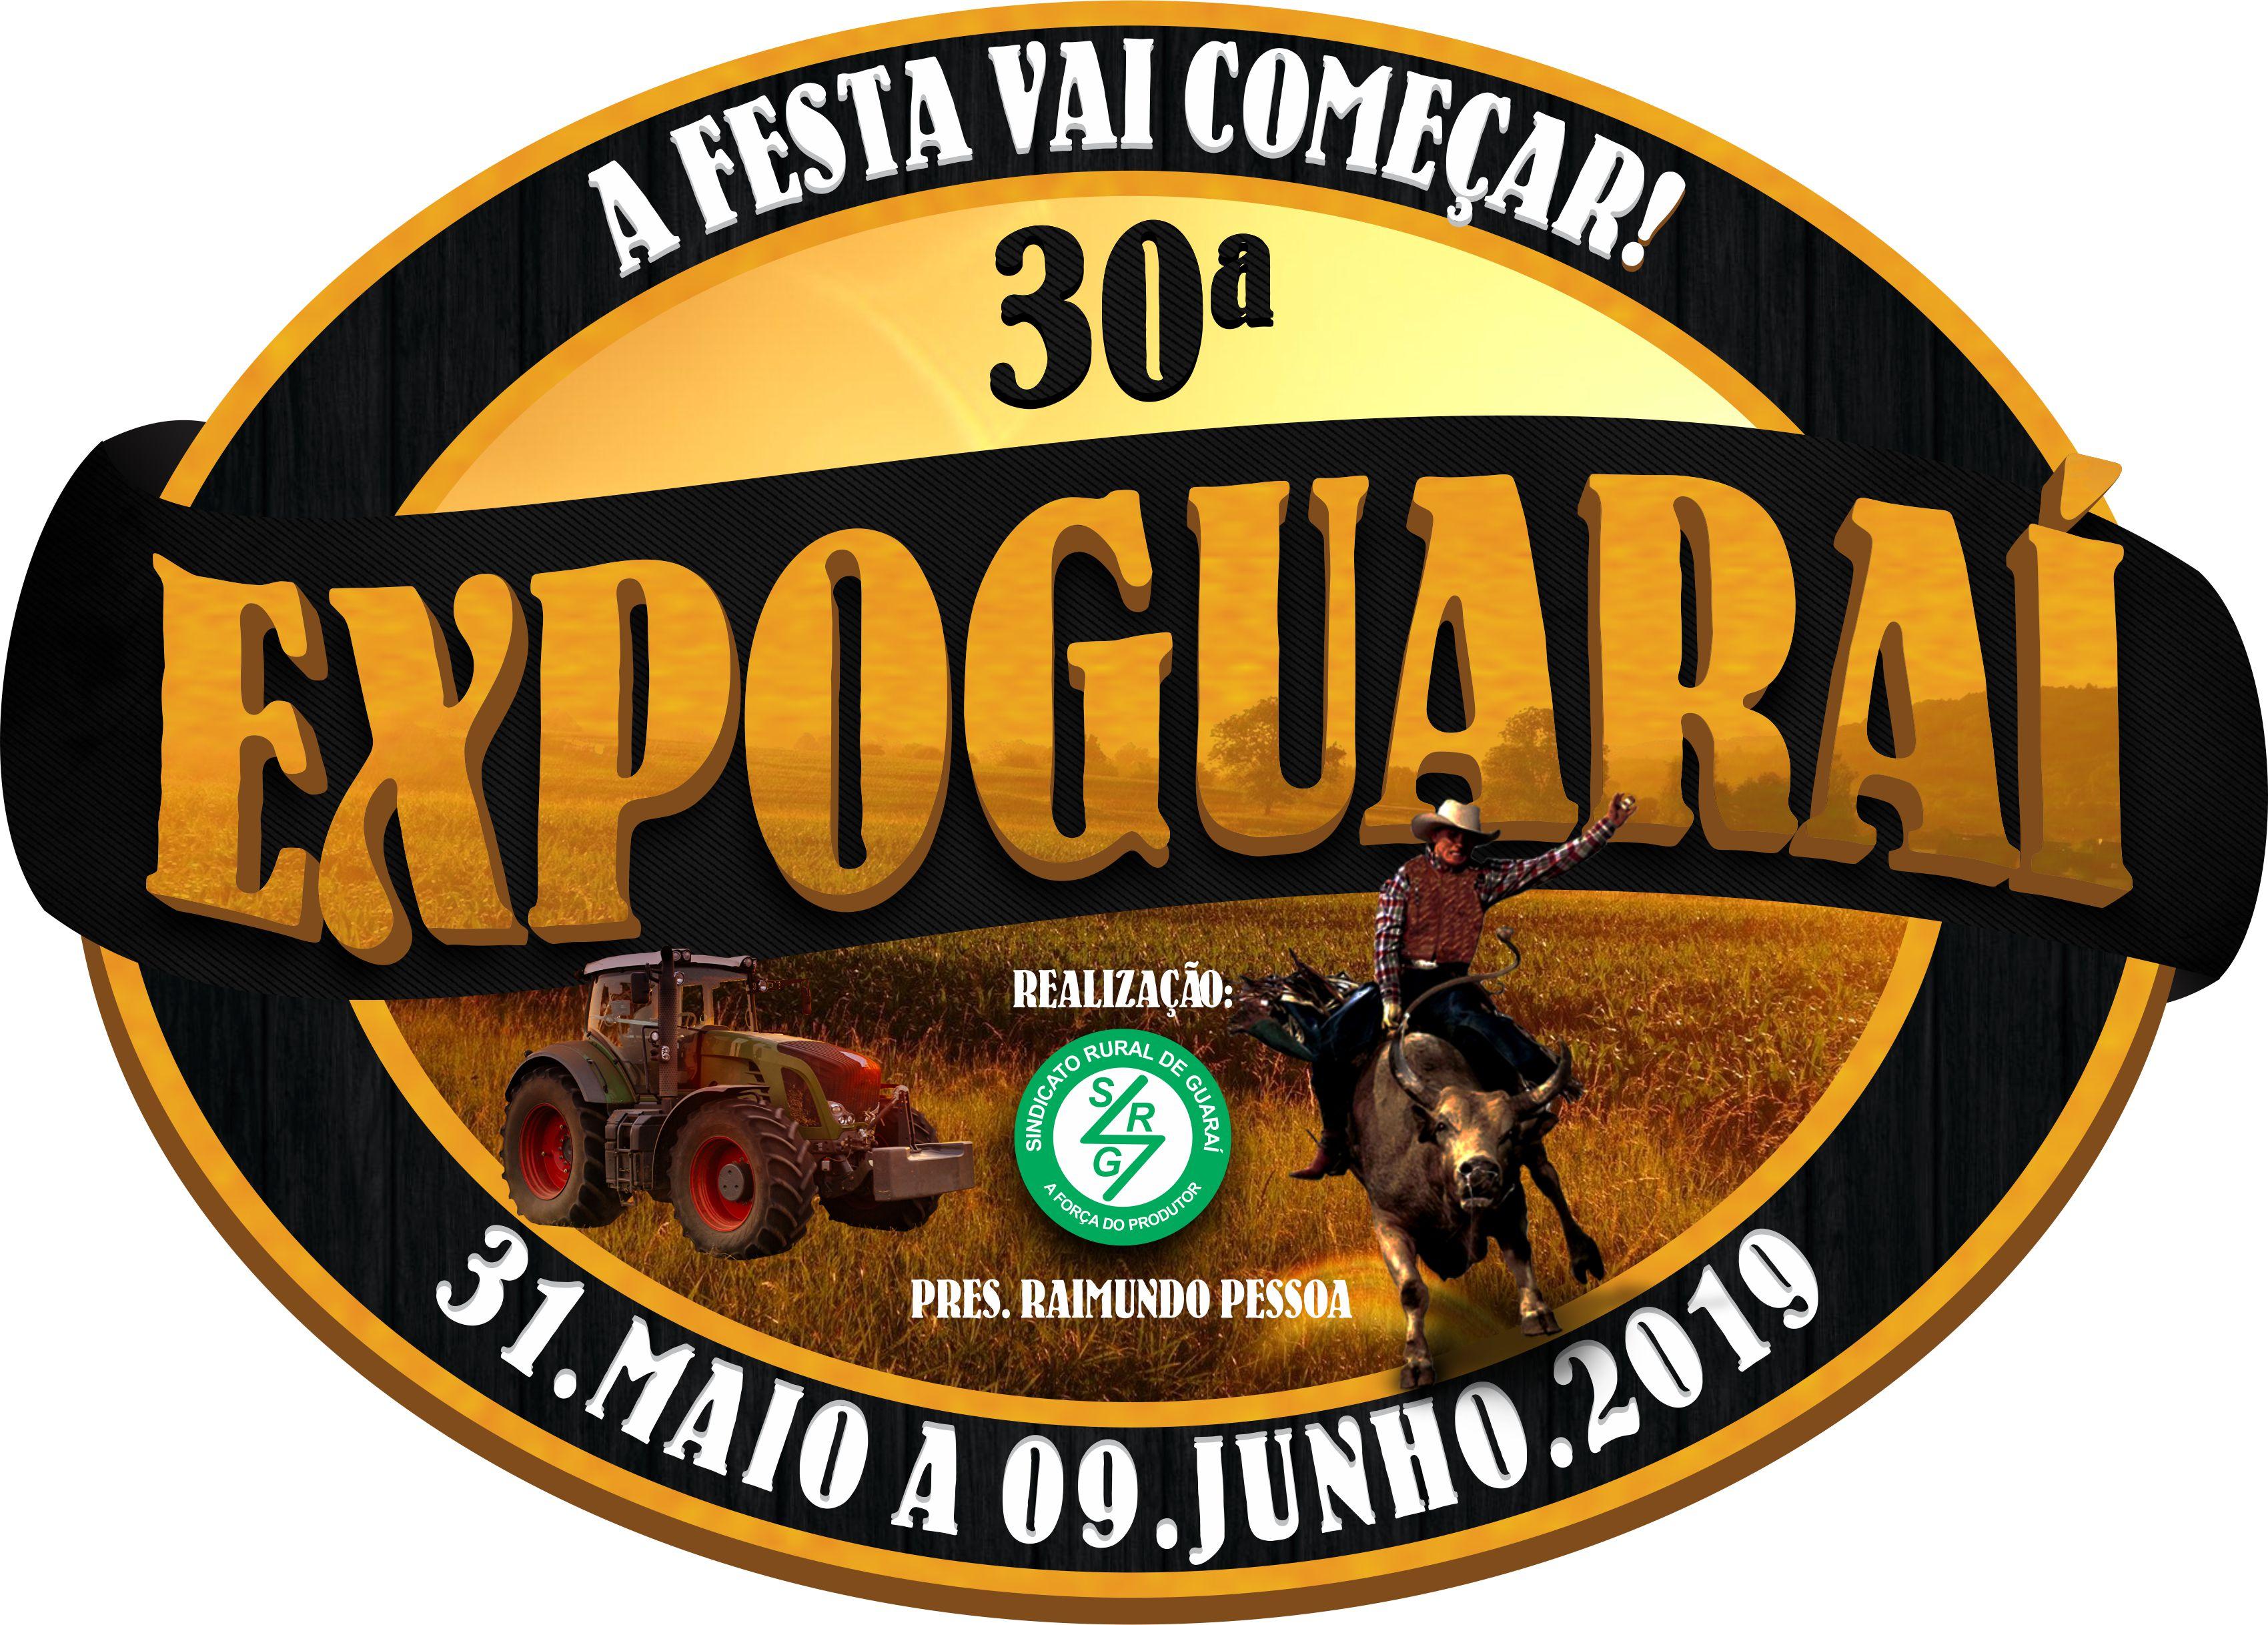 Programação da 30ª Exposição Agropecuária de Guaraí (EXPOGUARAÍ) – De 31/05 a 09/06/2019